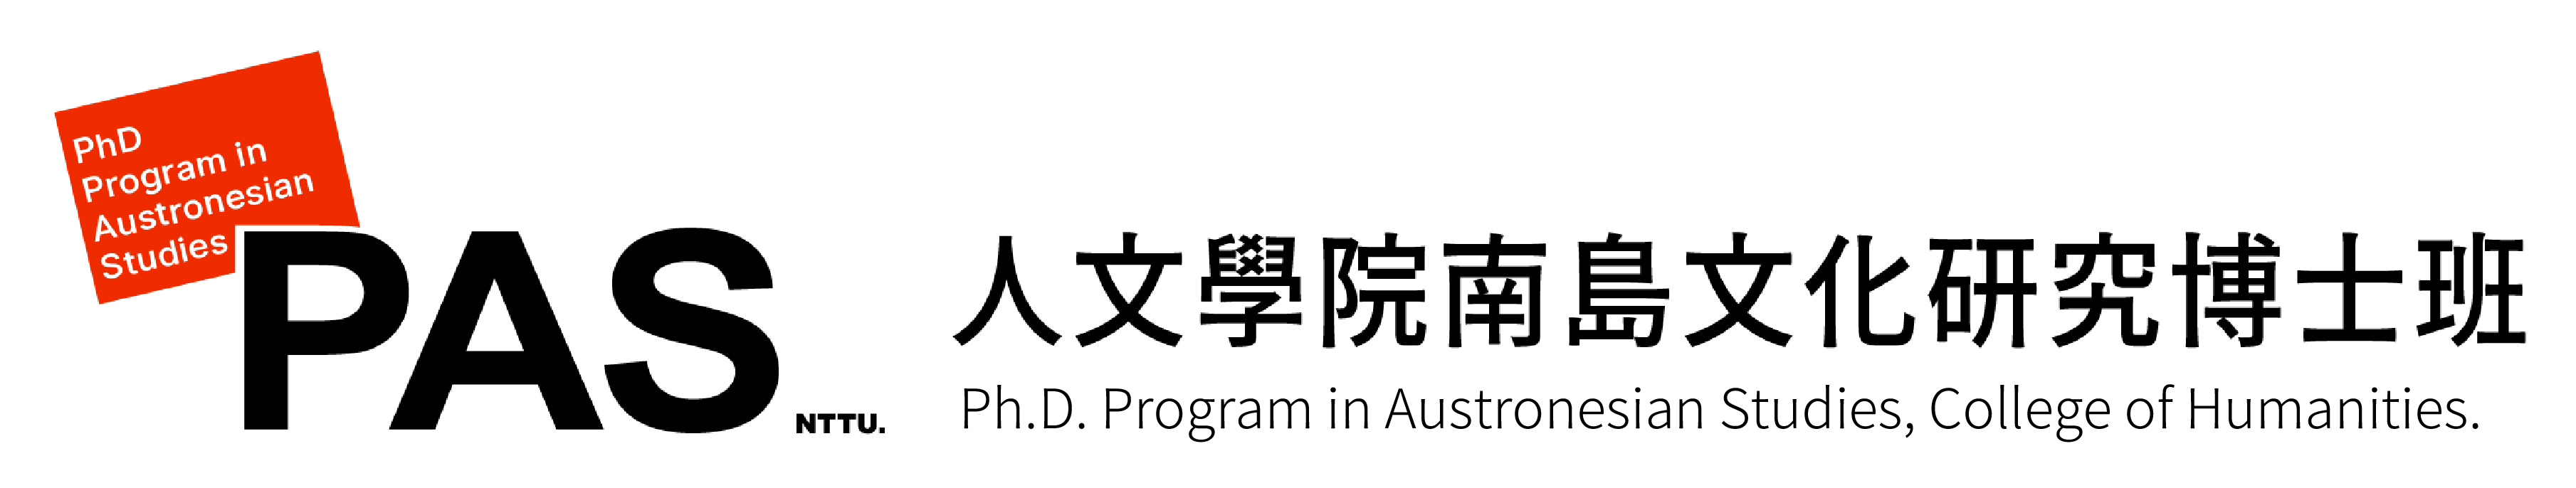 Ph.D. Program in Austronesian Studies, College of Humanities.